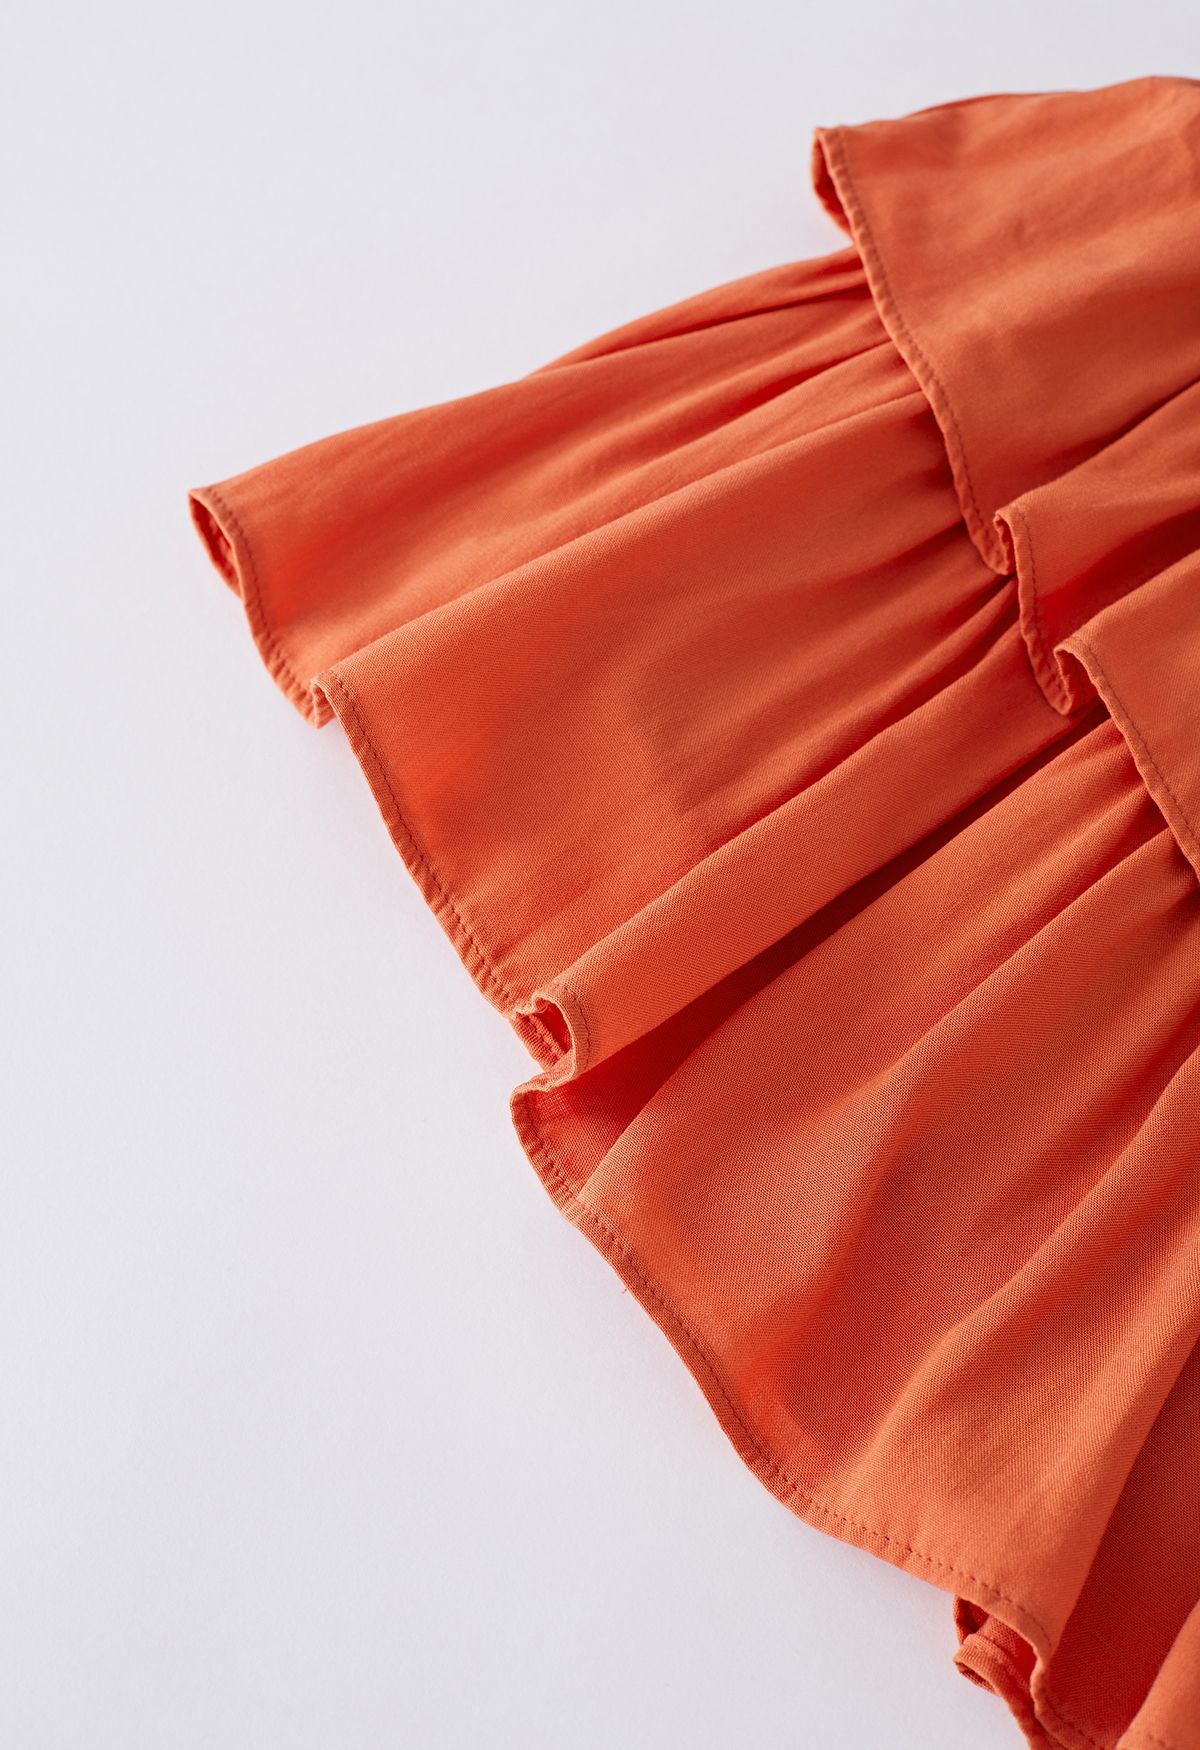 Mini-jupe froncée à volants et à volants en orange